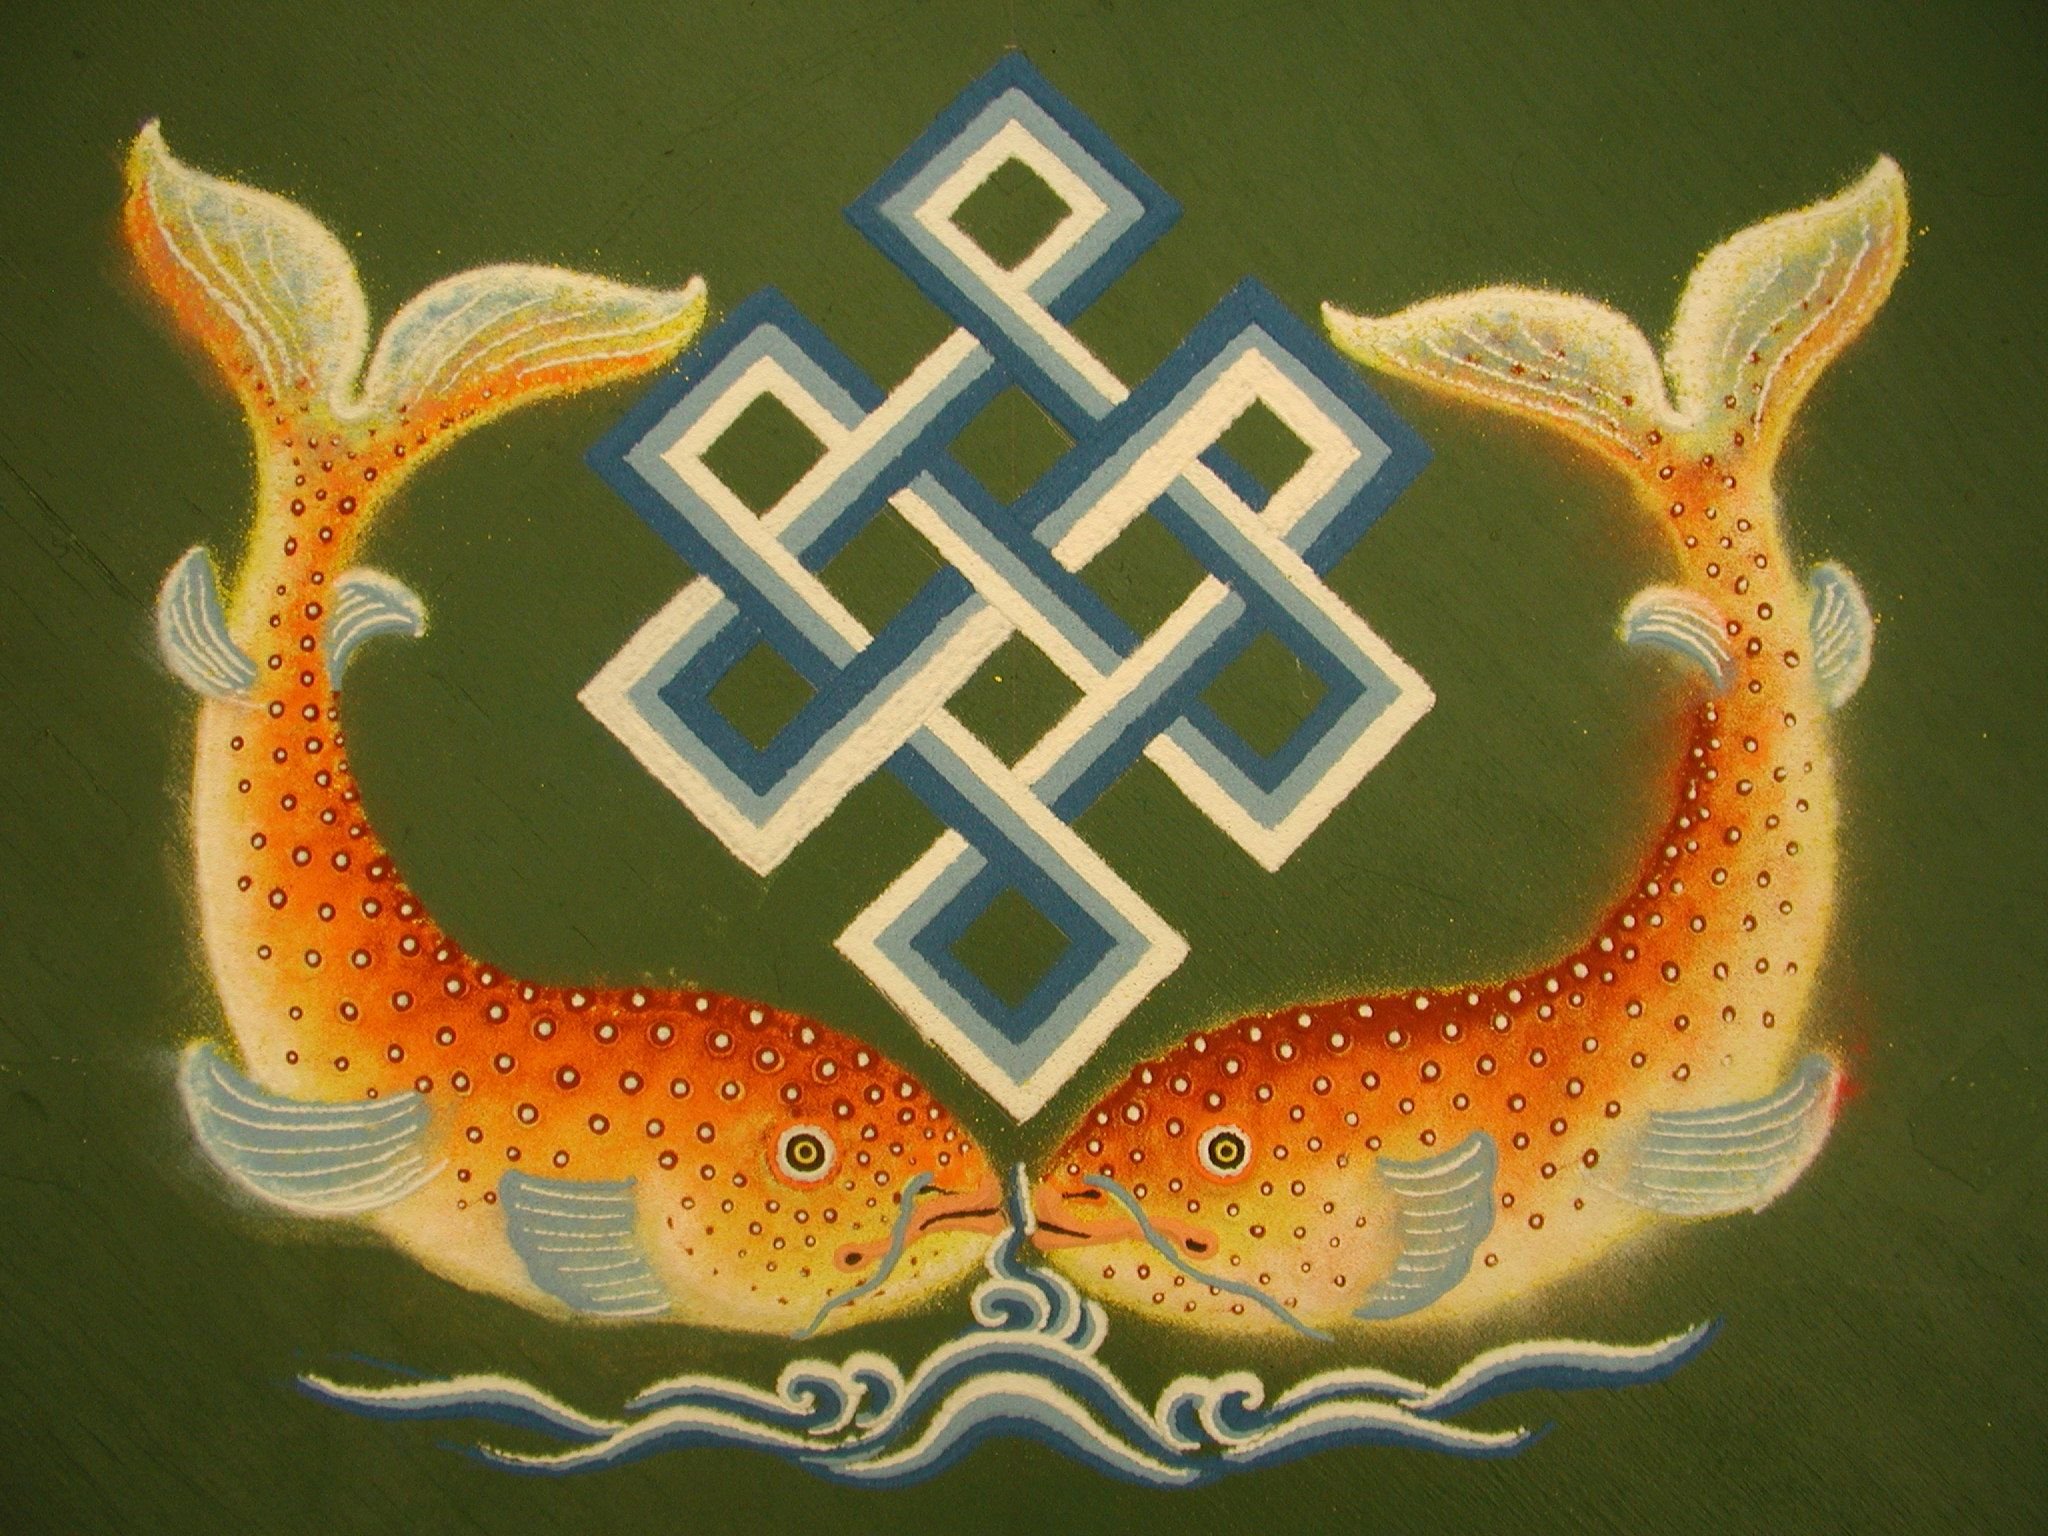 Код богатства рыбы. Золотые рыбы (матсья).. Золотые рыбки буддизм. Славянский символ удачи. Символ богатства и процветания.